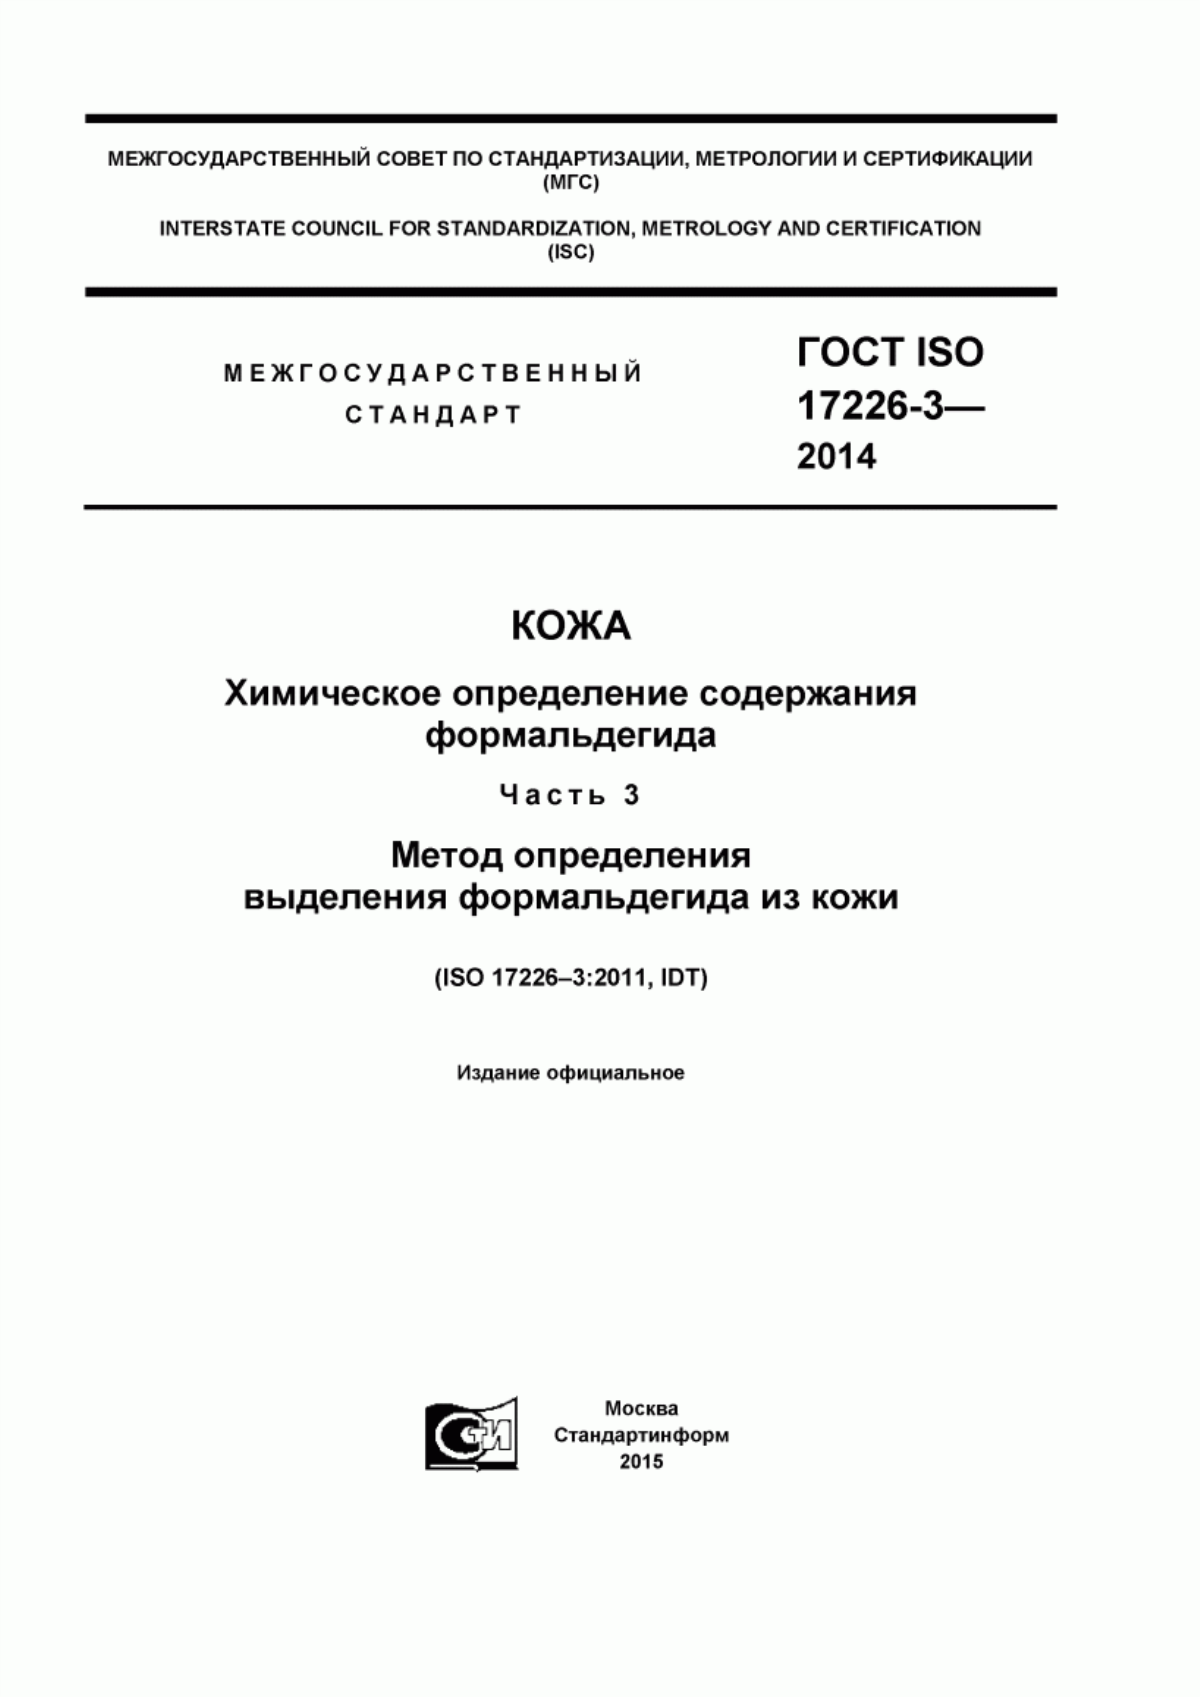 ГОСТ ISO 17226-3-2014 Кожа. Химическое определение содержания формальдегида. Часть 3. Метод определения выделения формальдегида из кожи